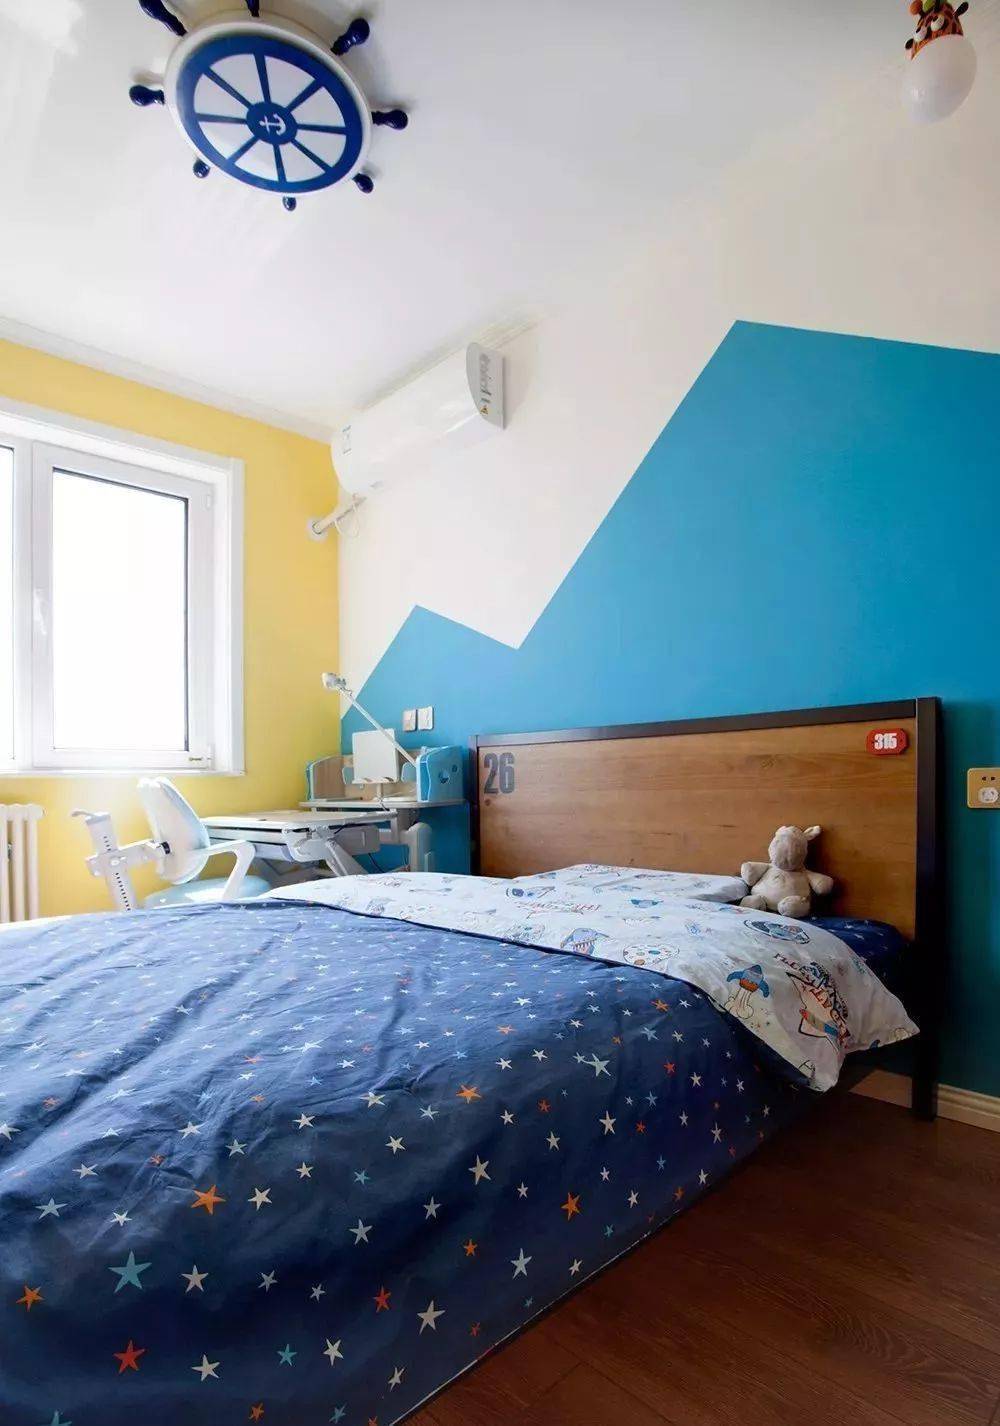 儿童房,采用天蓝色与柠檬黄的色彩搭配,蓝色山峰形状的床头背景墙